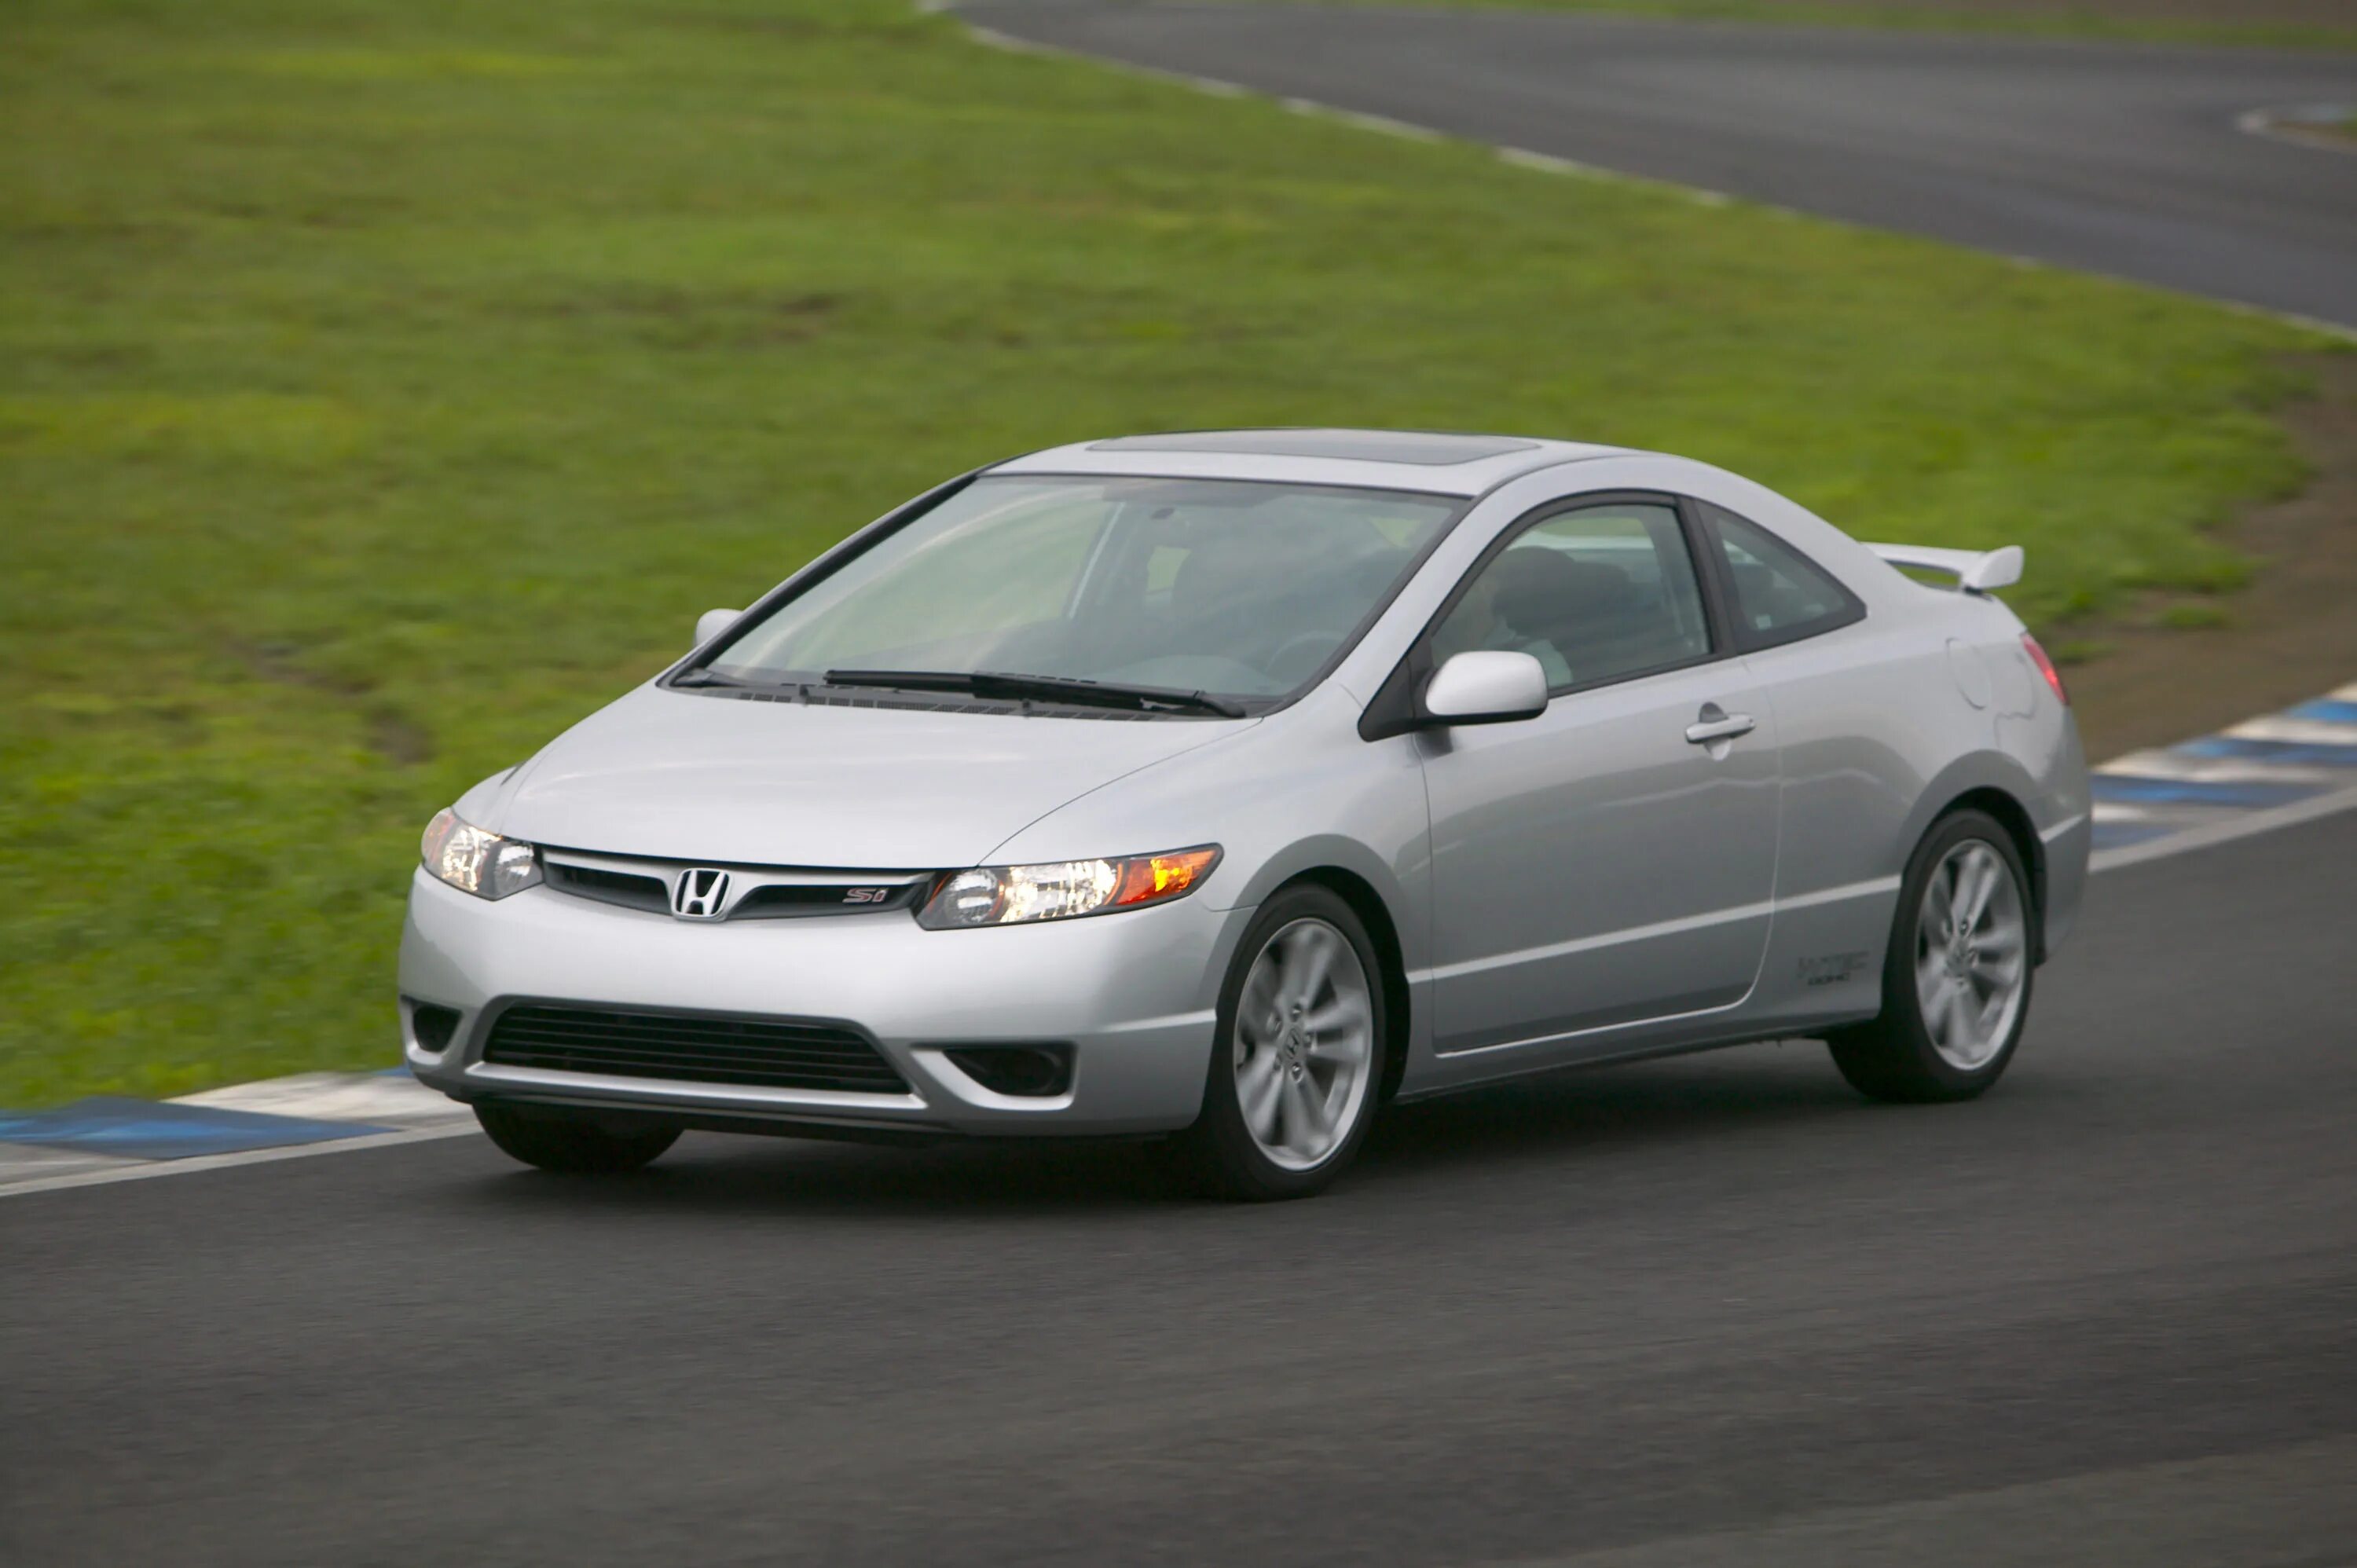 Honda купить в спб. Honda Civic 2006. Honda Civic 2006 хэтчбек. Хонда Цивик 2006 седан. Honda Civic 2006 sedan.